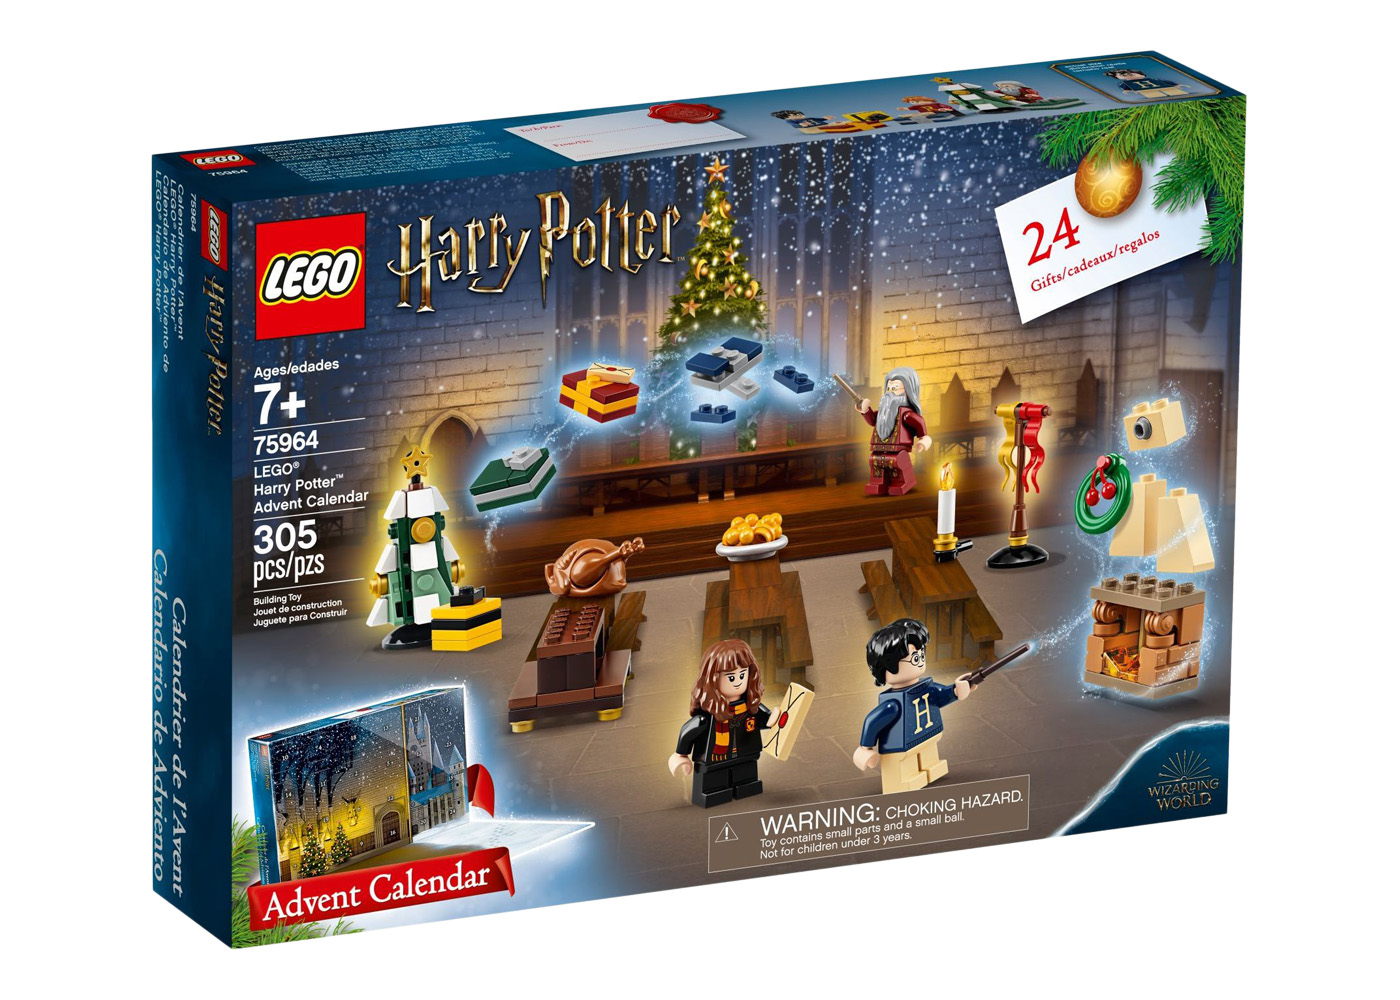 LEGO Harry Potter Hogwarts Crests Set 31201 - GB